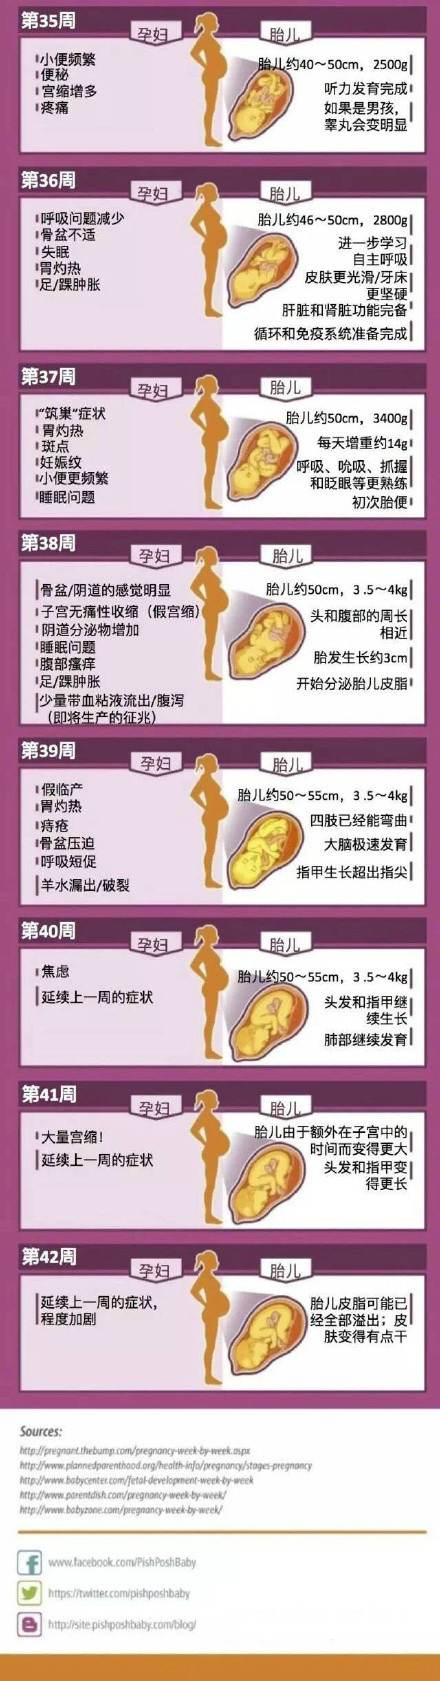 孕妇体型变化图图片